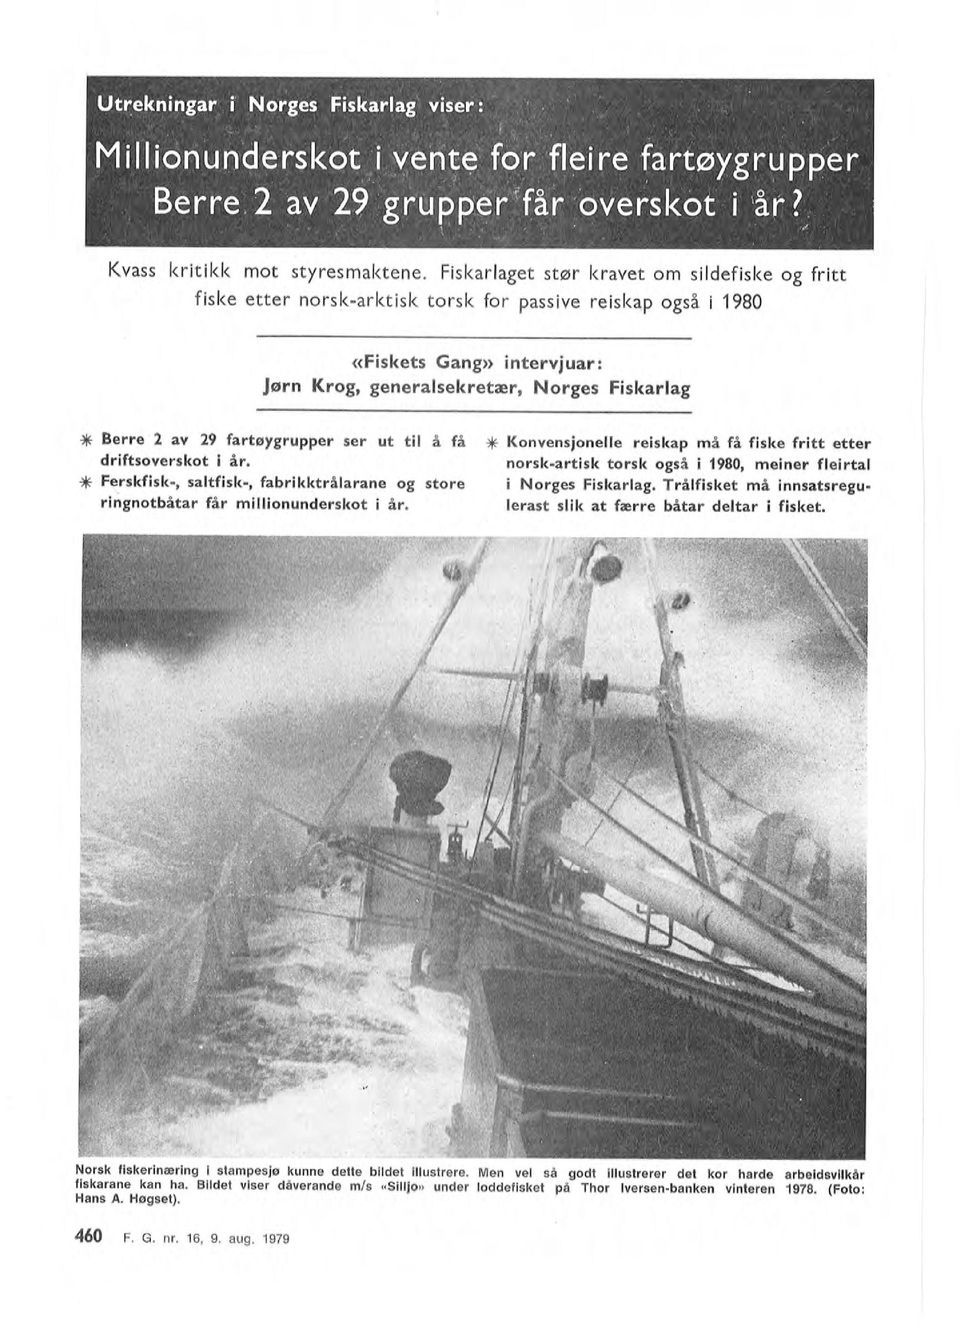 Men vel så gdt illustrerer det kr harde arbeidsvukår fiskarane kan ha. Bildet viser dåverande m/s «Sillj» under lddefisket på Thr Iversen-banken vinteren 1978. (Ft: Hans A. Høgset).